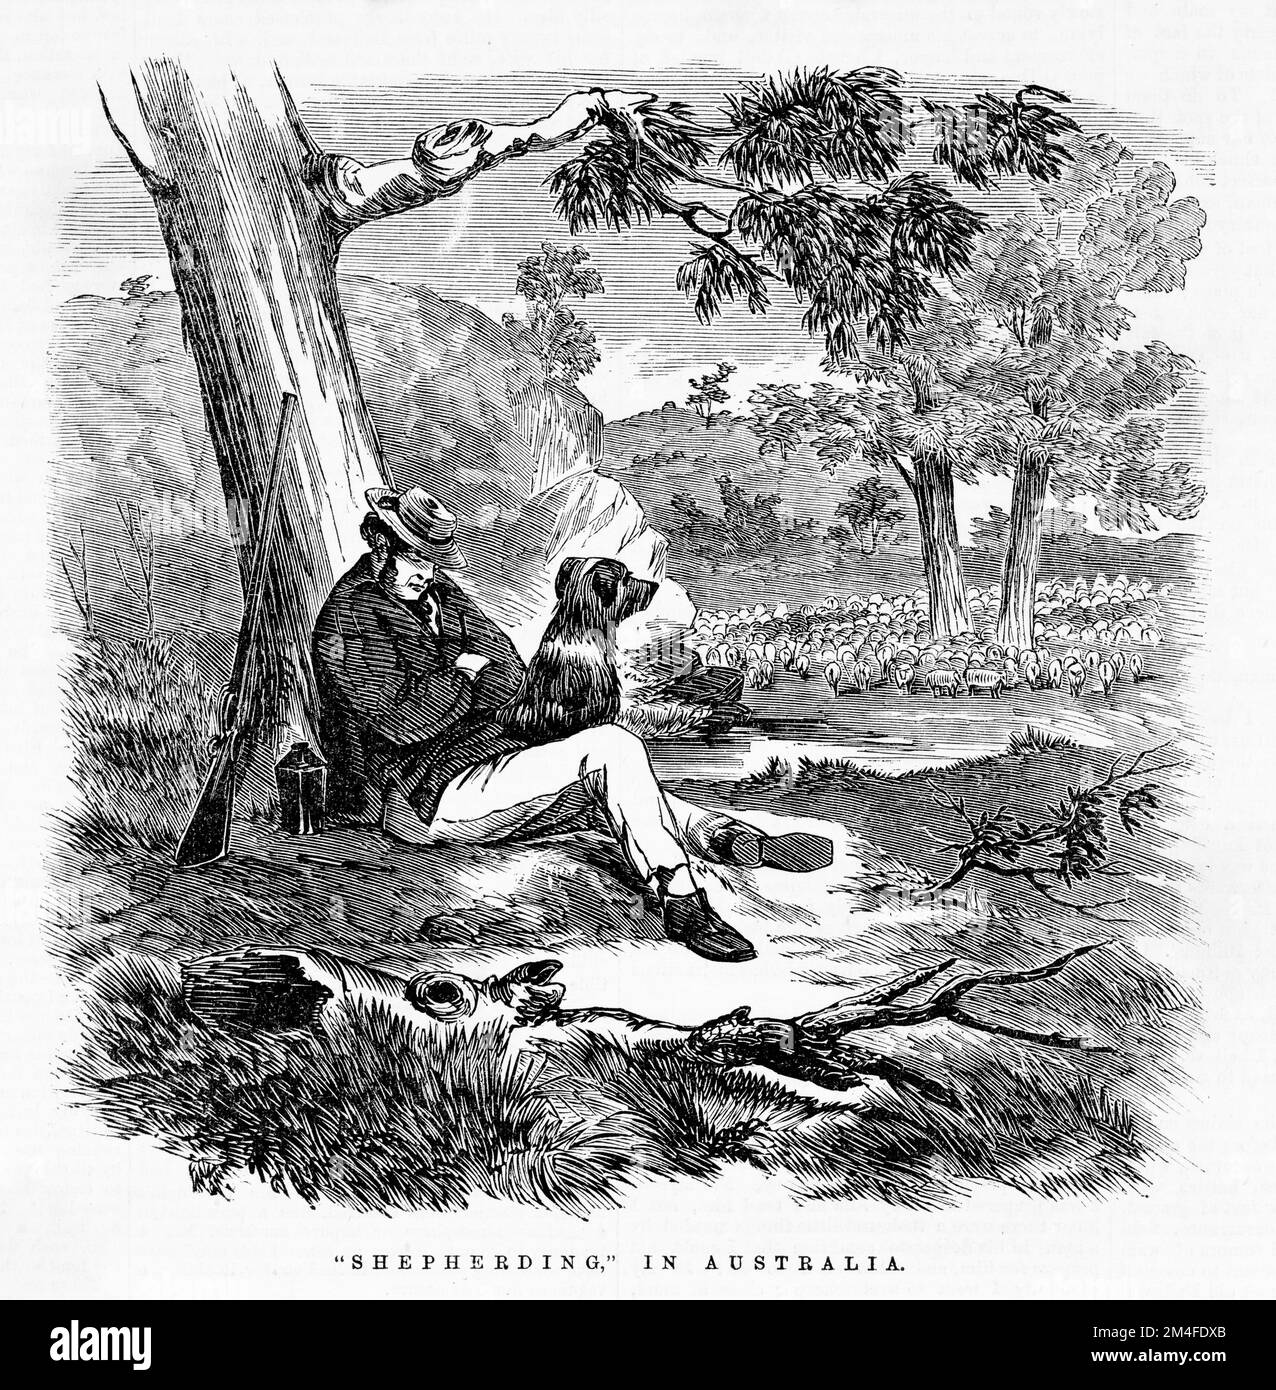 Bergers en Australie. Montre le berger dormant sous un arbre avec son fusil et son chien de chaque côté de lui, troupeau de moutons pas loin. Illustration du journal australien de 1864 Banque D'Images